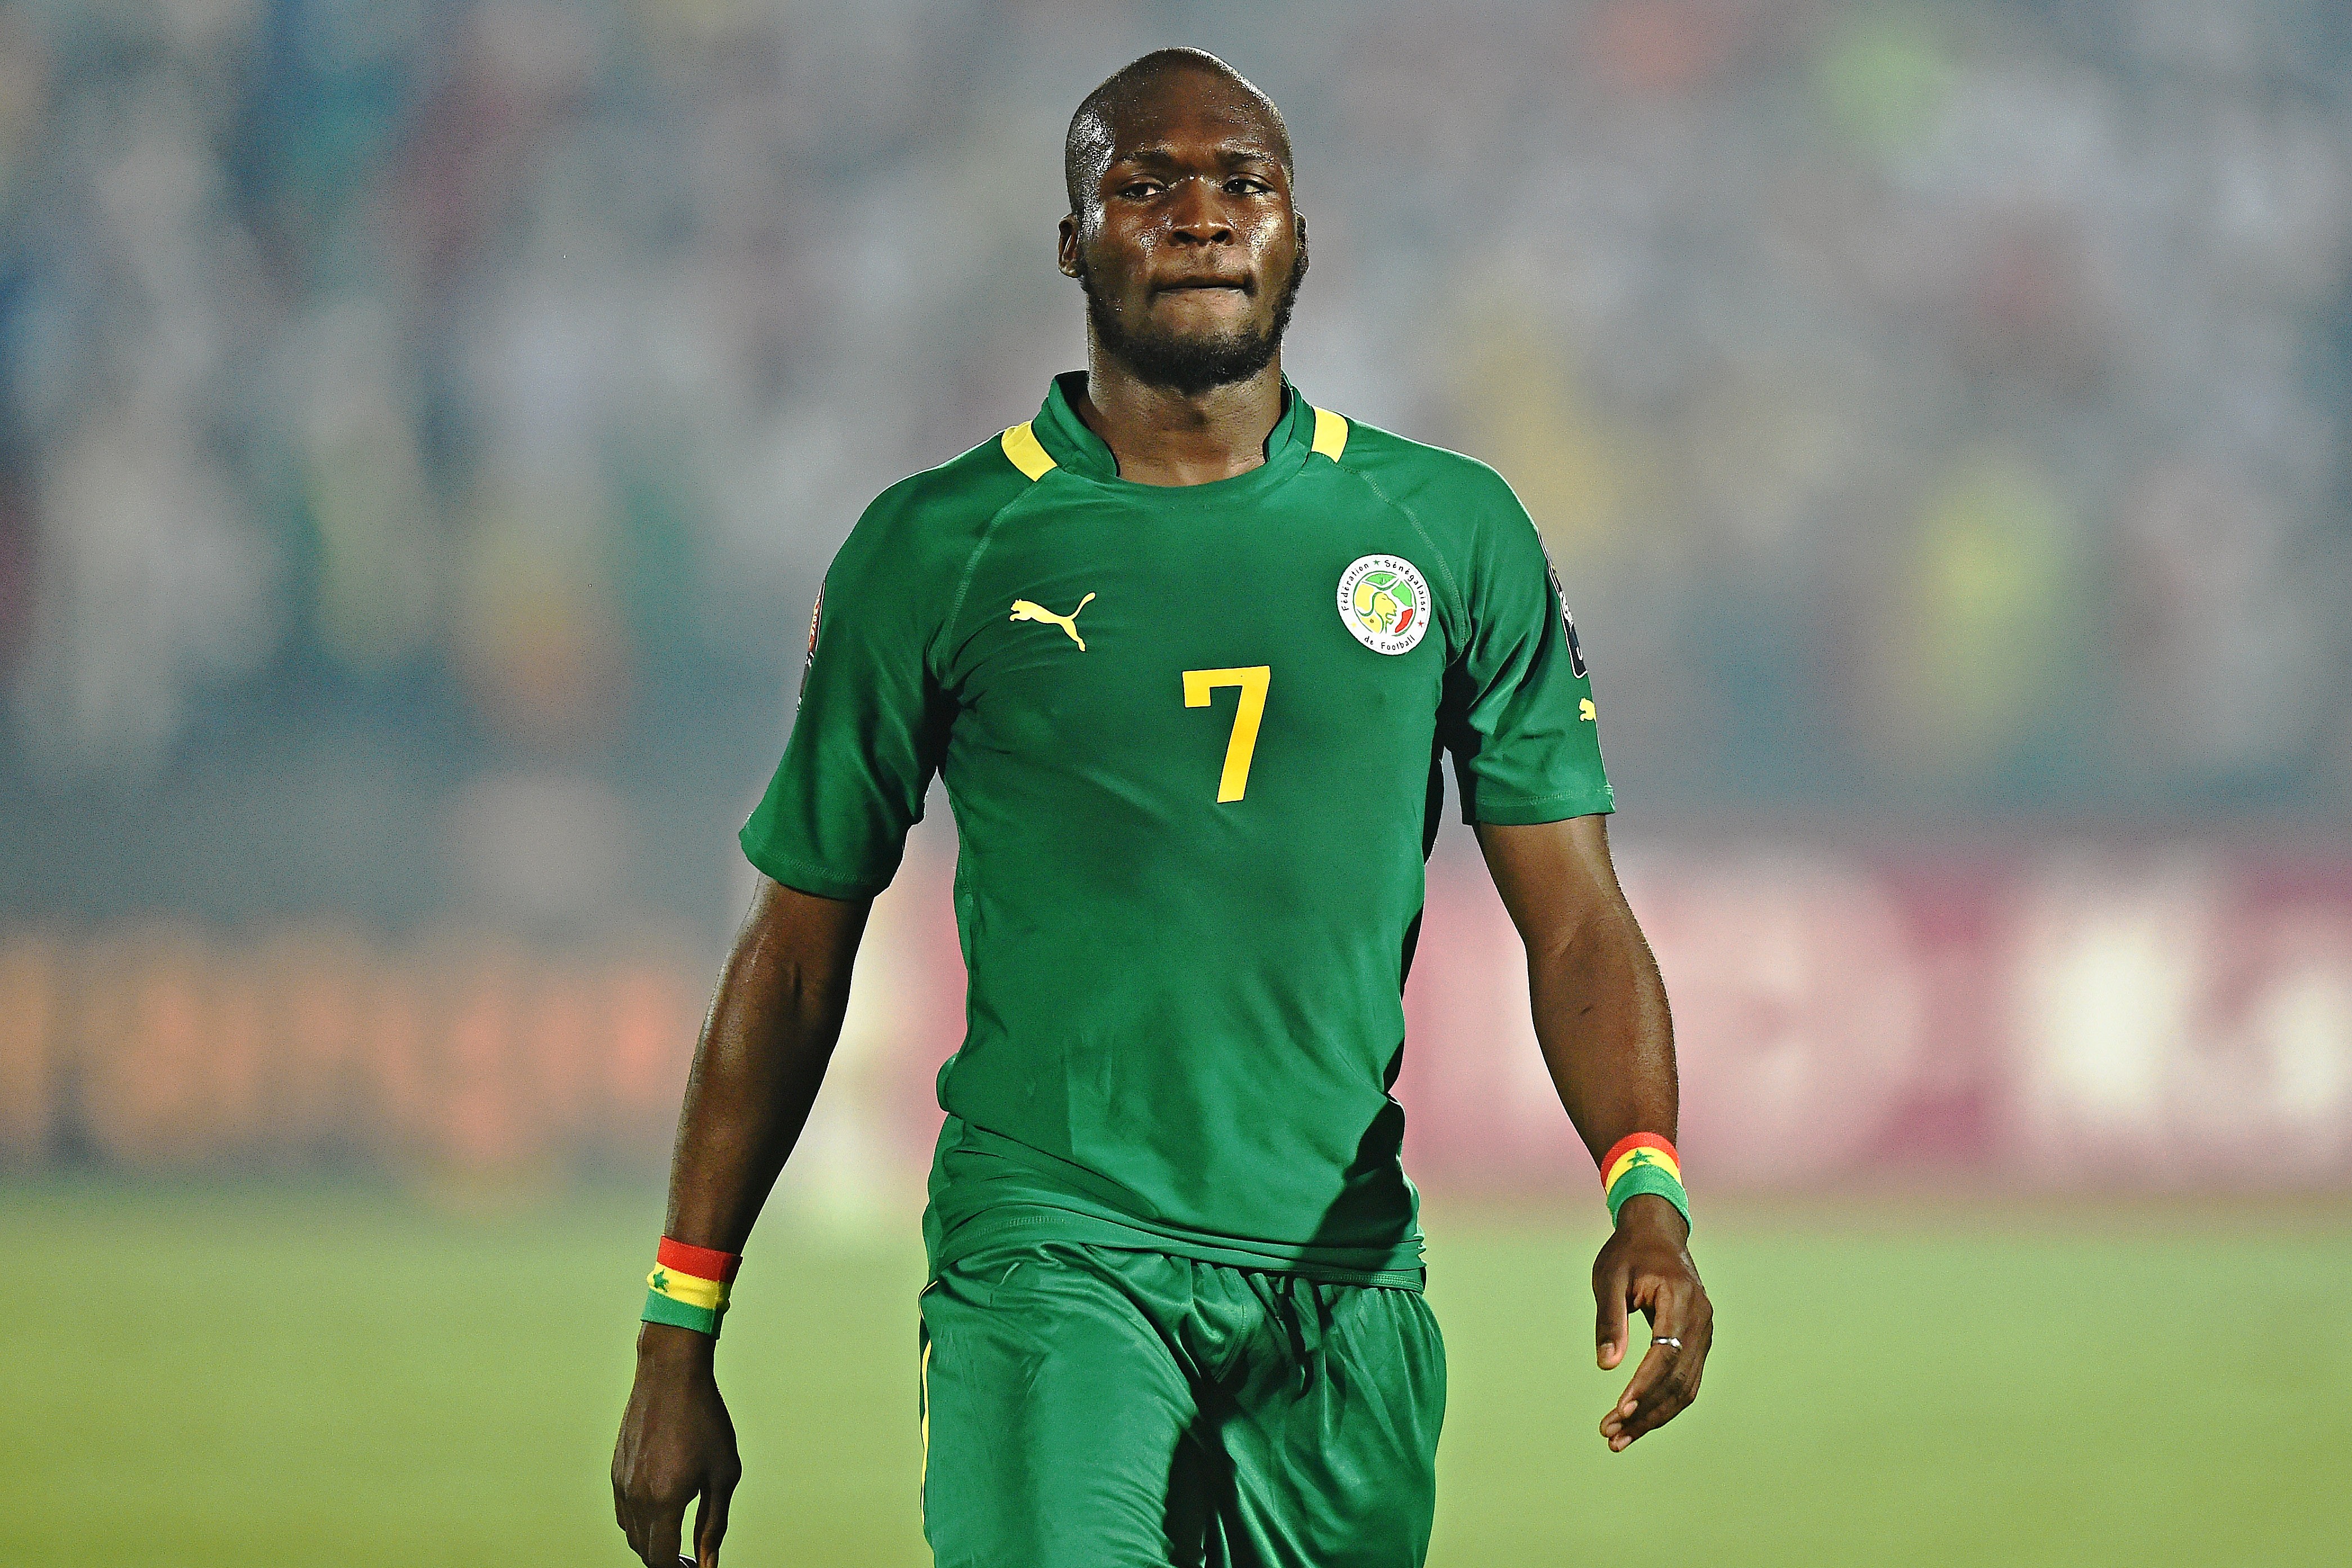 Moussa Sow, de retour en équipe nationale après plus d’un an d’absence, est l’un des atouts sur lesquels peut miser le sélectionneur national Aliou Cissé, pour réussir une bonne entrée en matière dans le cadre du dernier tour des éliminatoires du Mondial 2018.